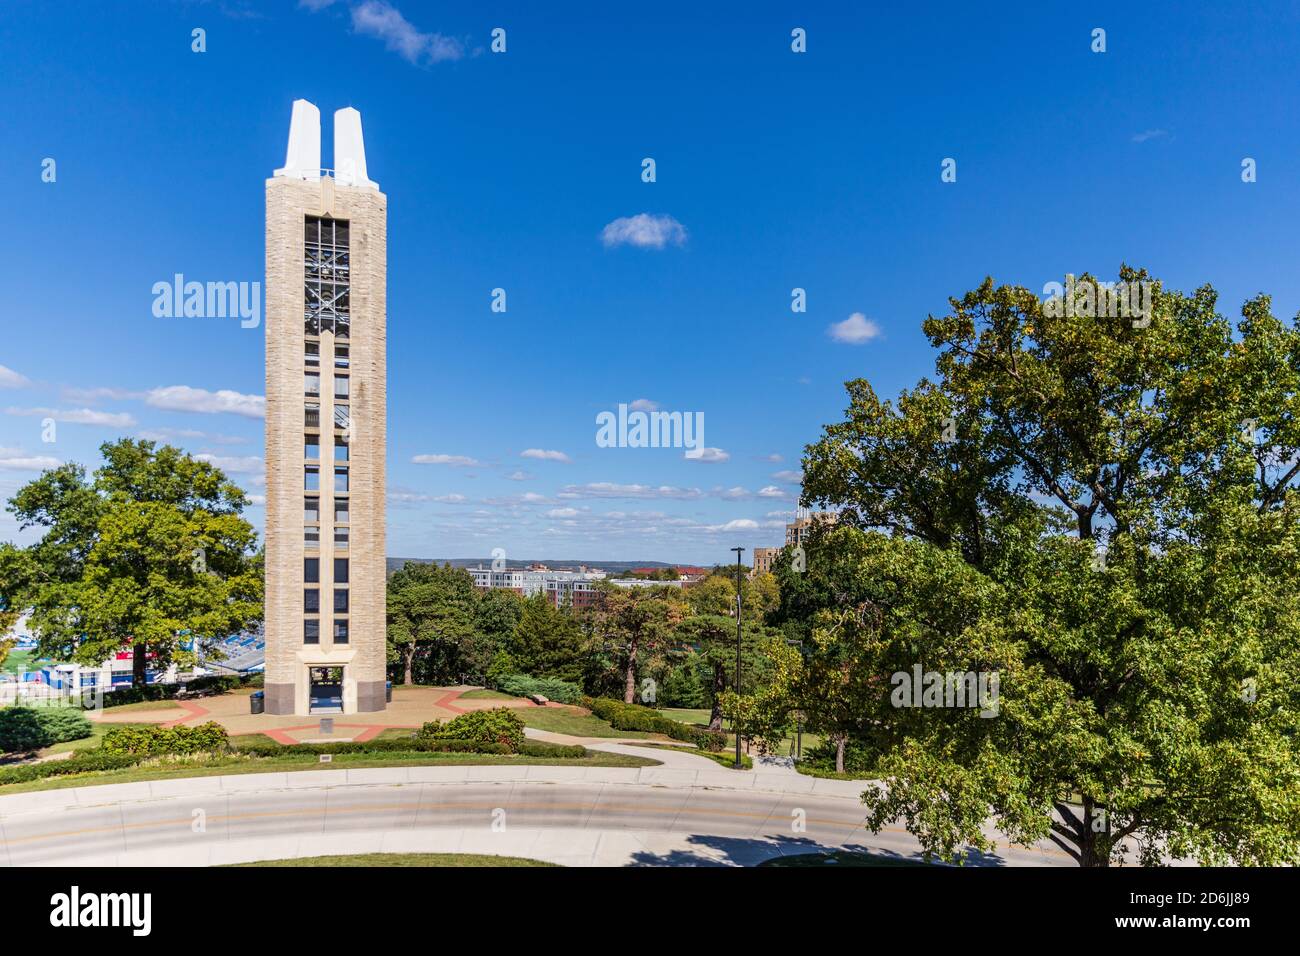 Lawrence, Kansas, États-Unis - 1er octobre 2020 : Campanile de la Seconde Guerre mondiale, érigé en 1950, sur le campus de l'Université du Kansas Banque D'Images